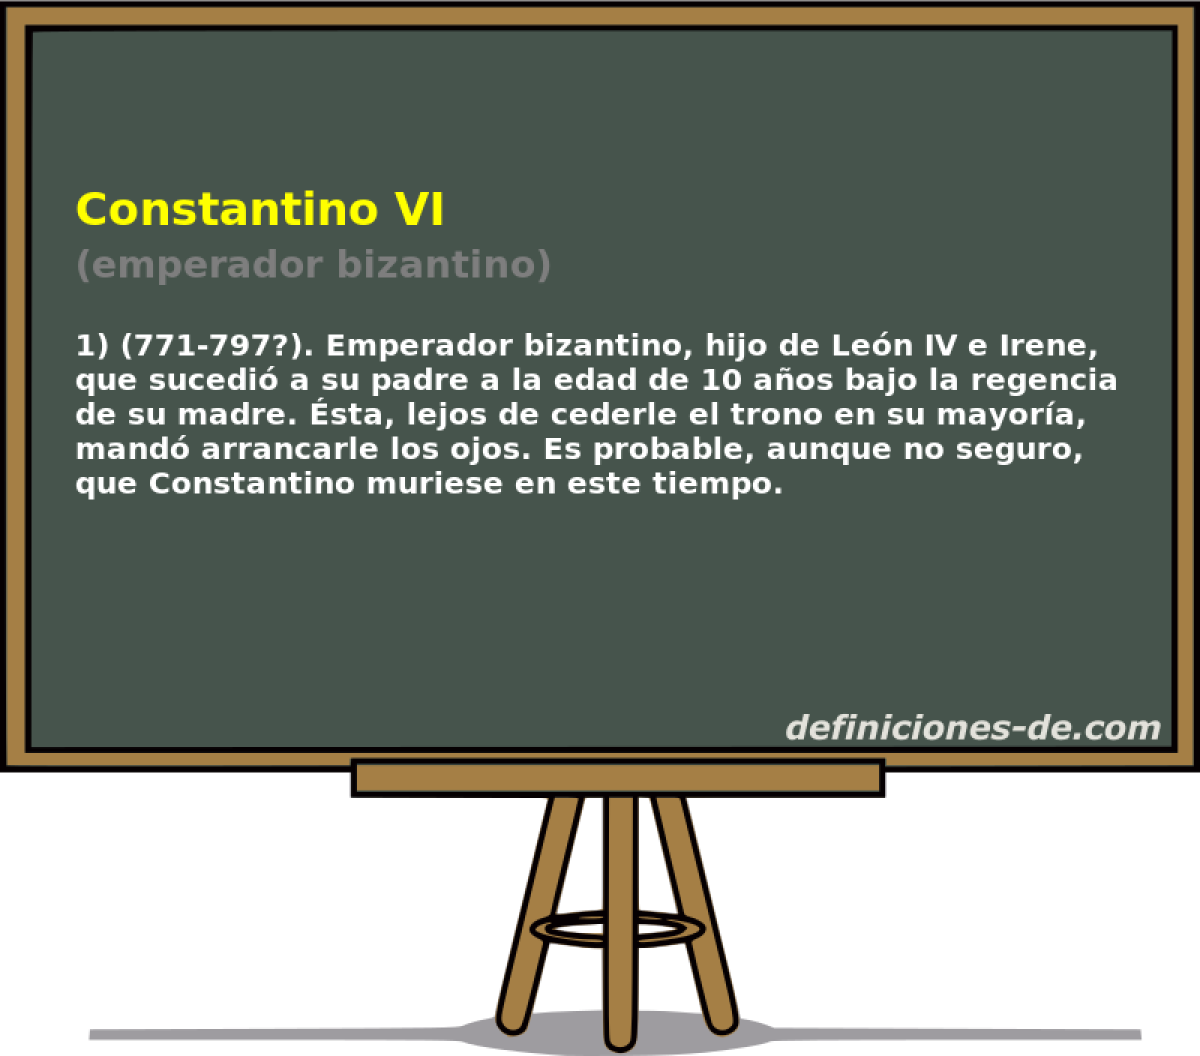 Constantino VI (emperador bizantino)